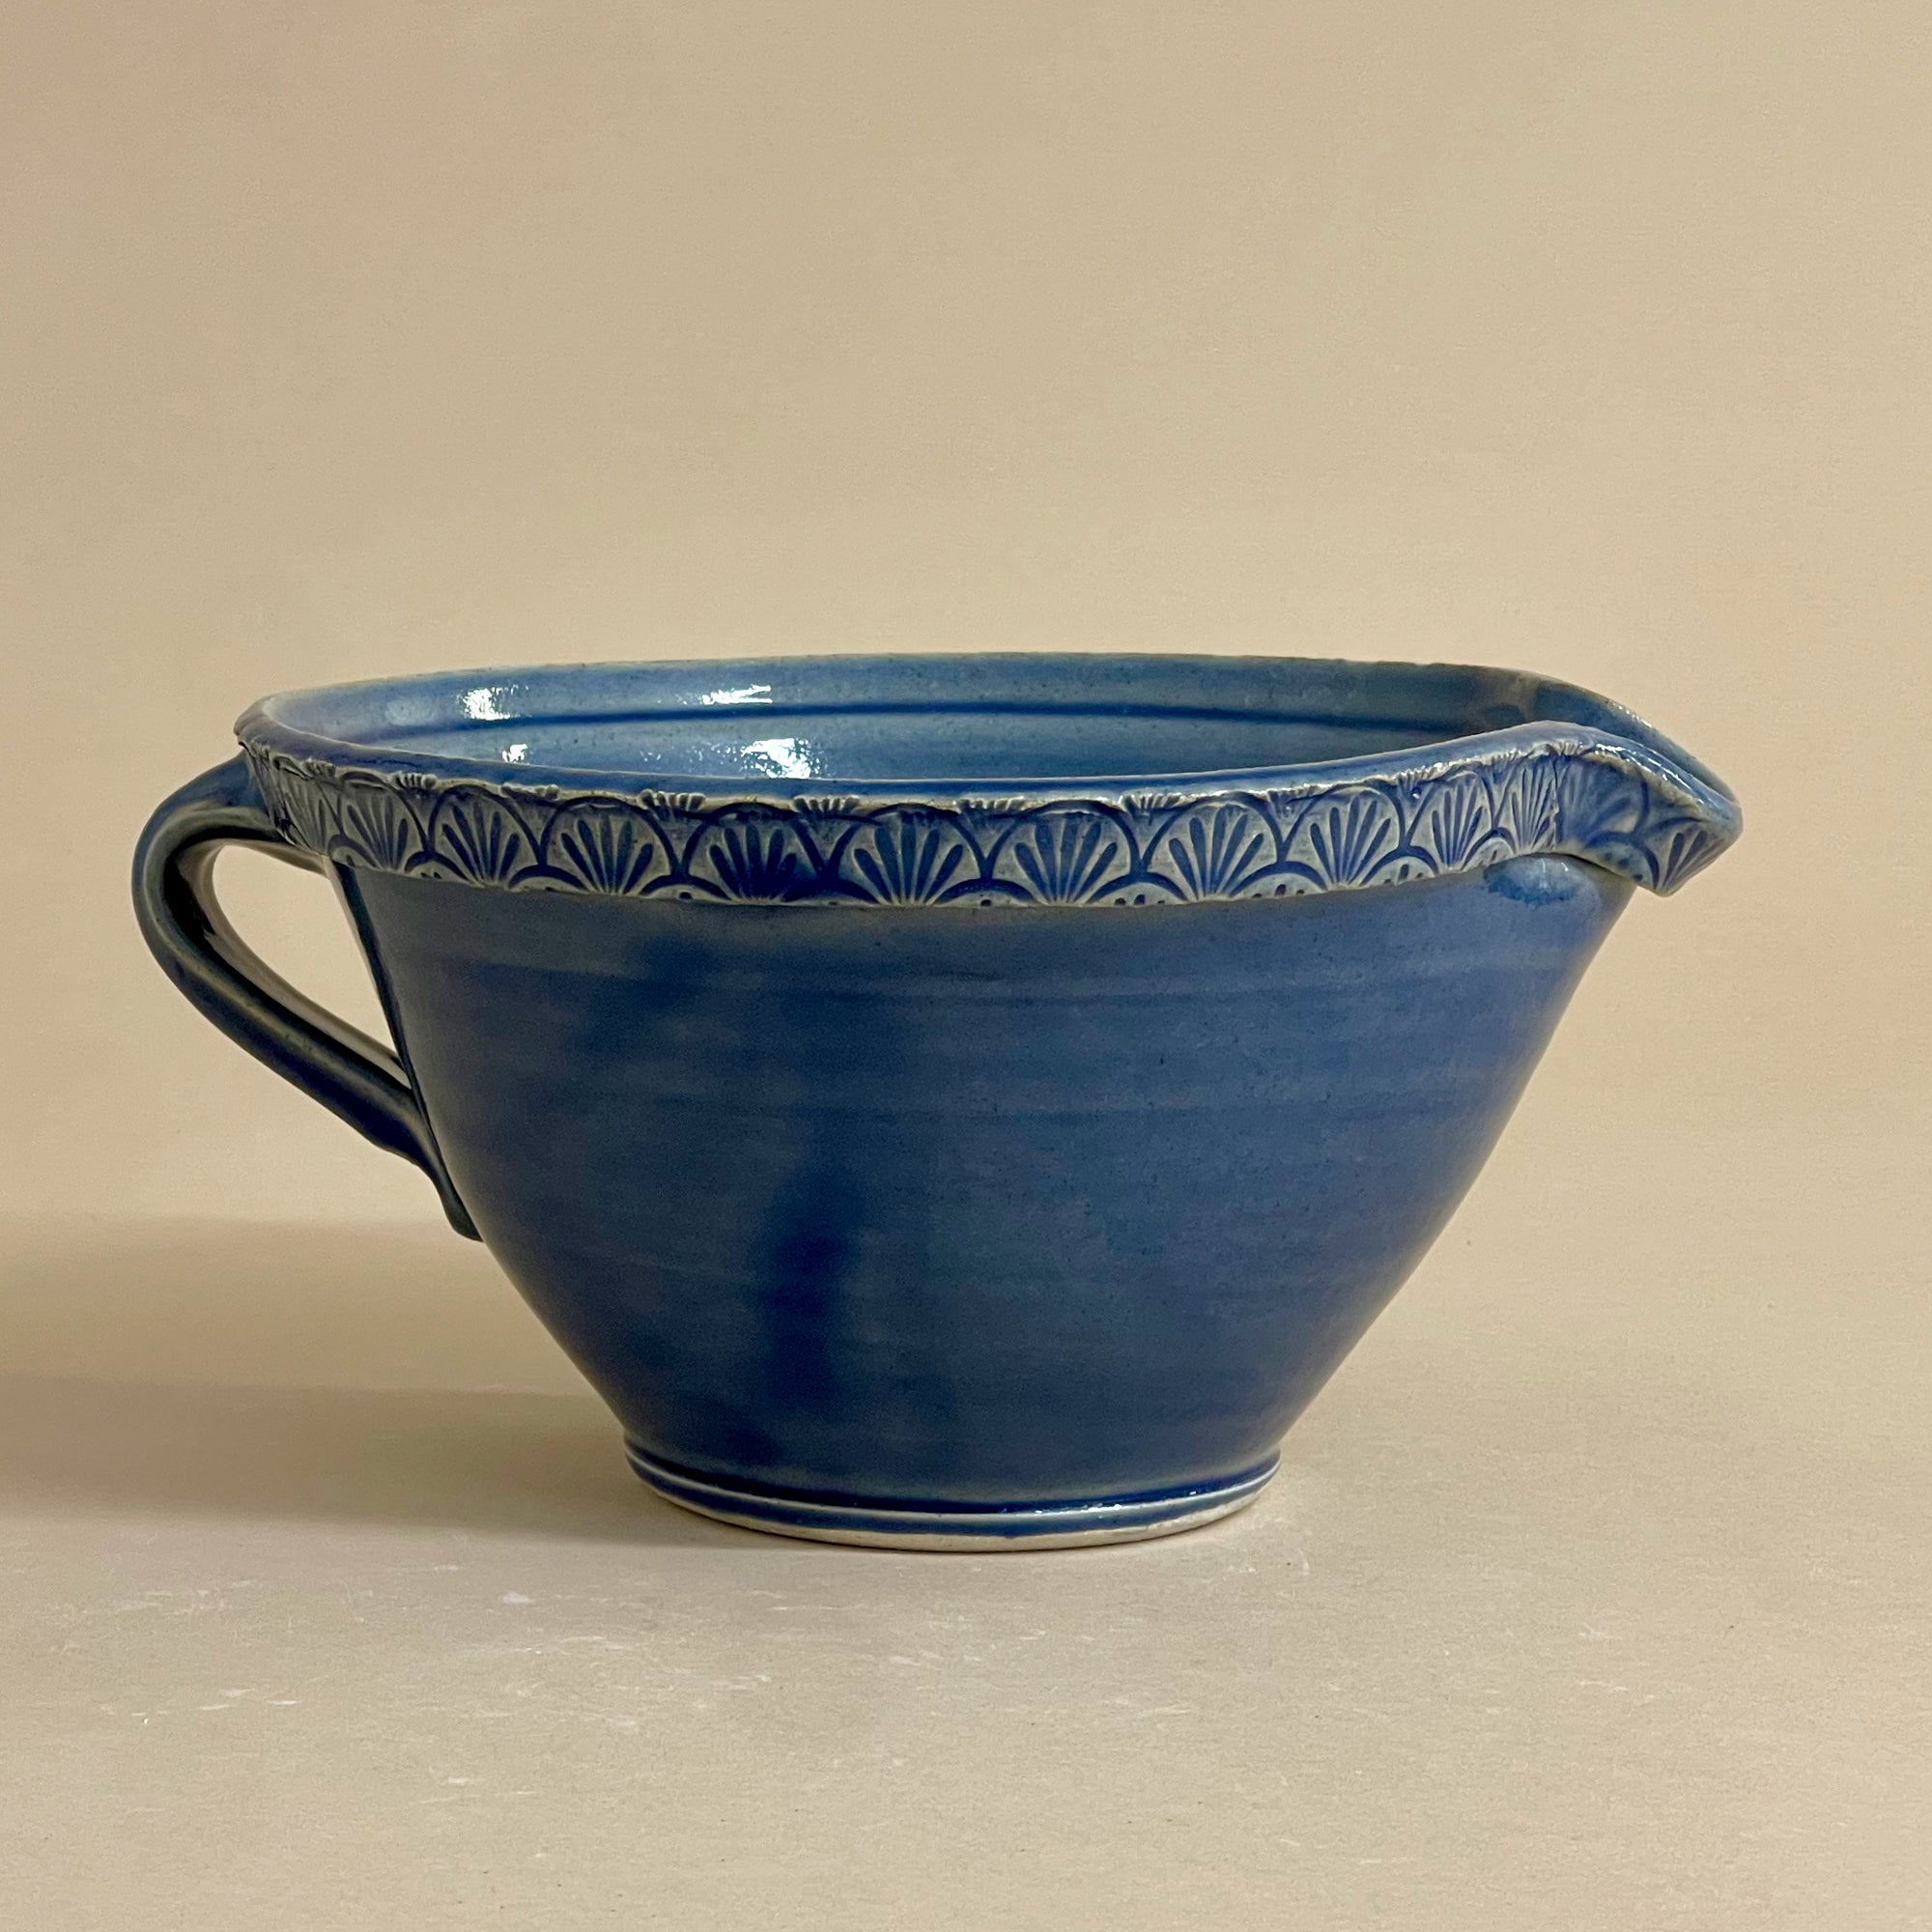 Glazed Stoneware Batter Bowls, Medium Size